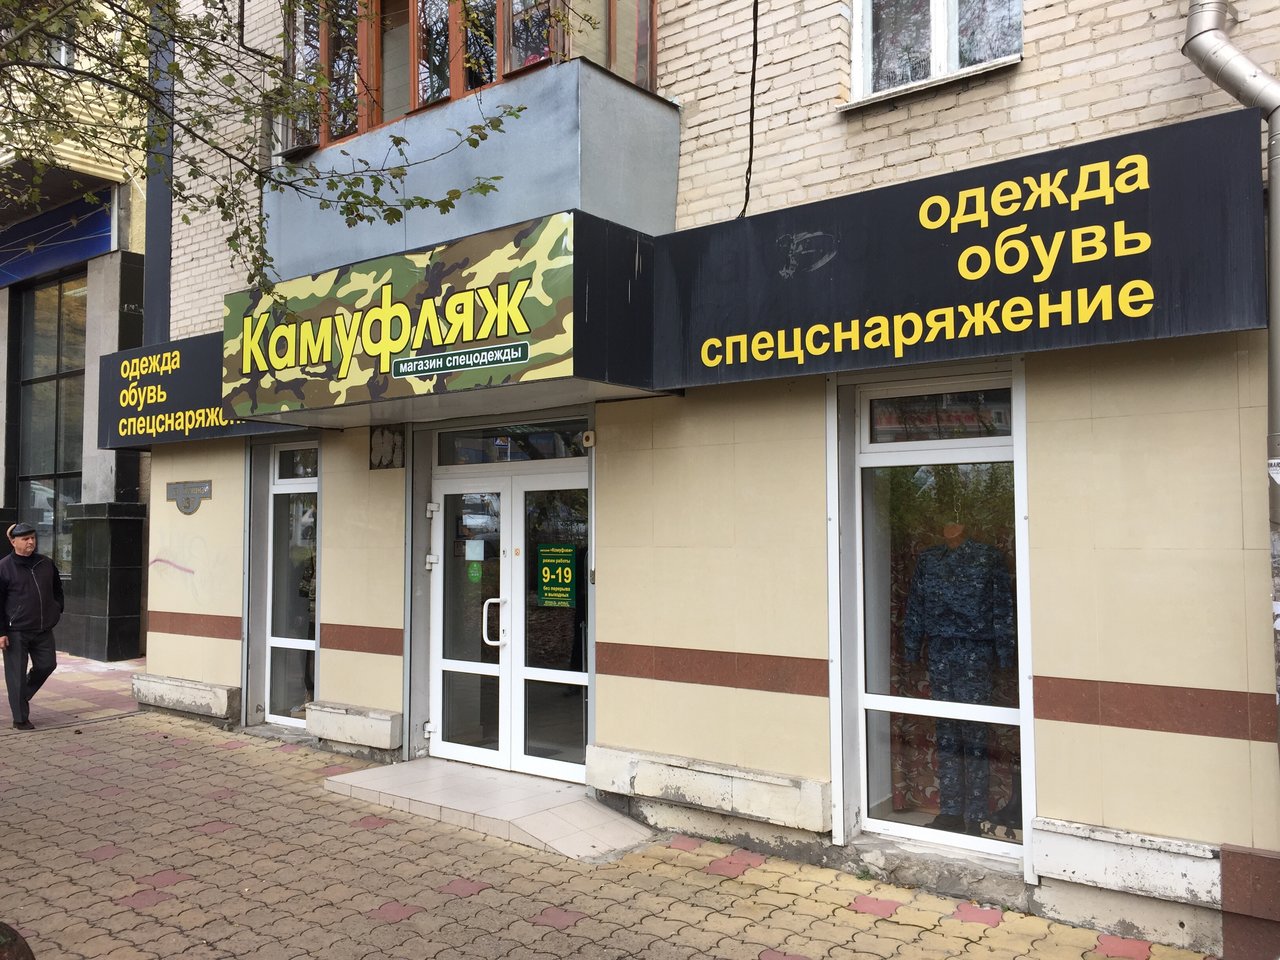 Вход в армейский магазин "Камуфляж" на Ленина в Ставрополе